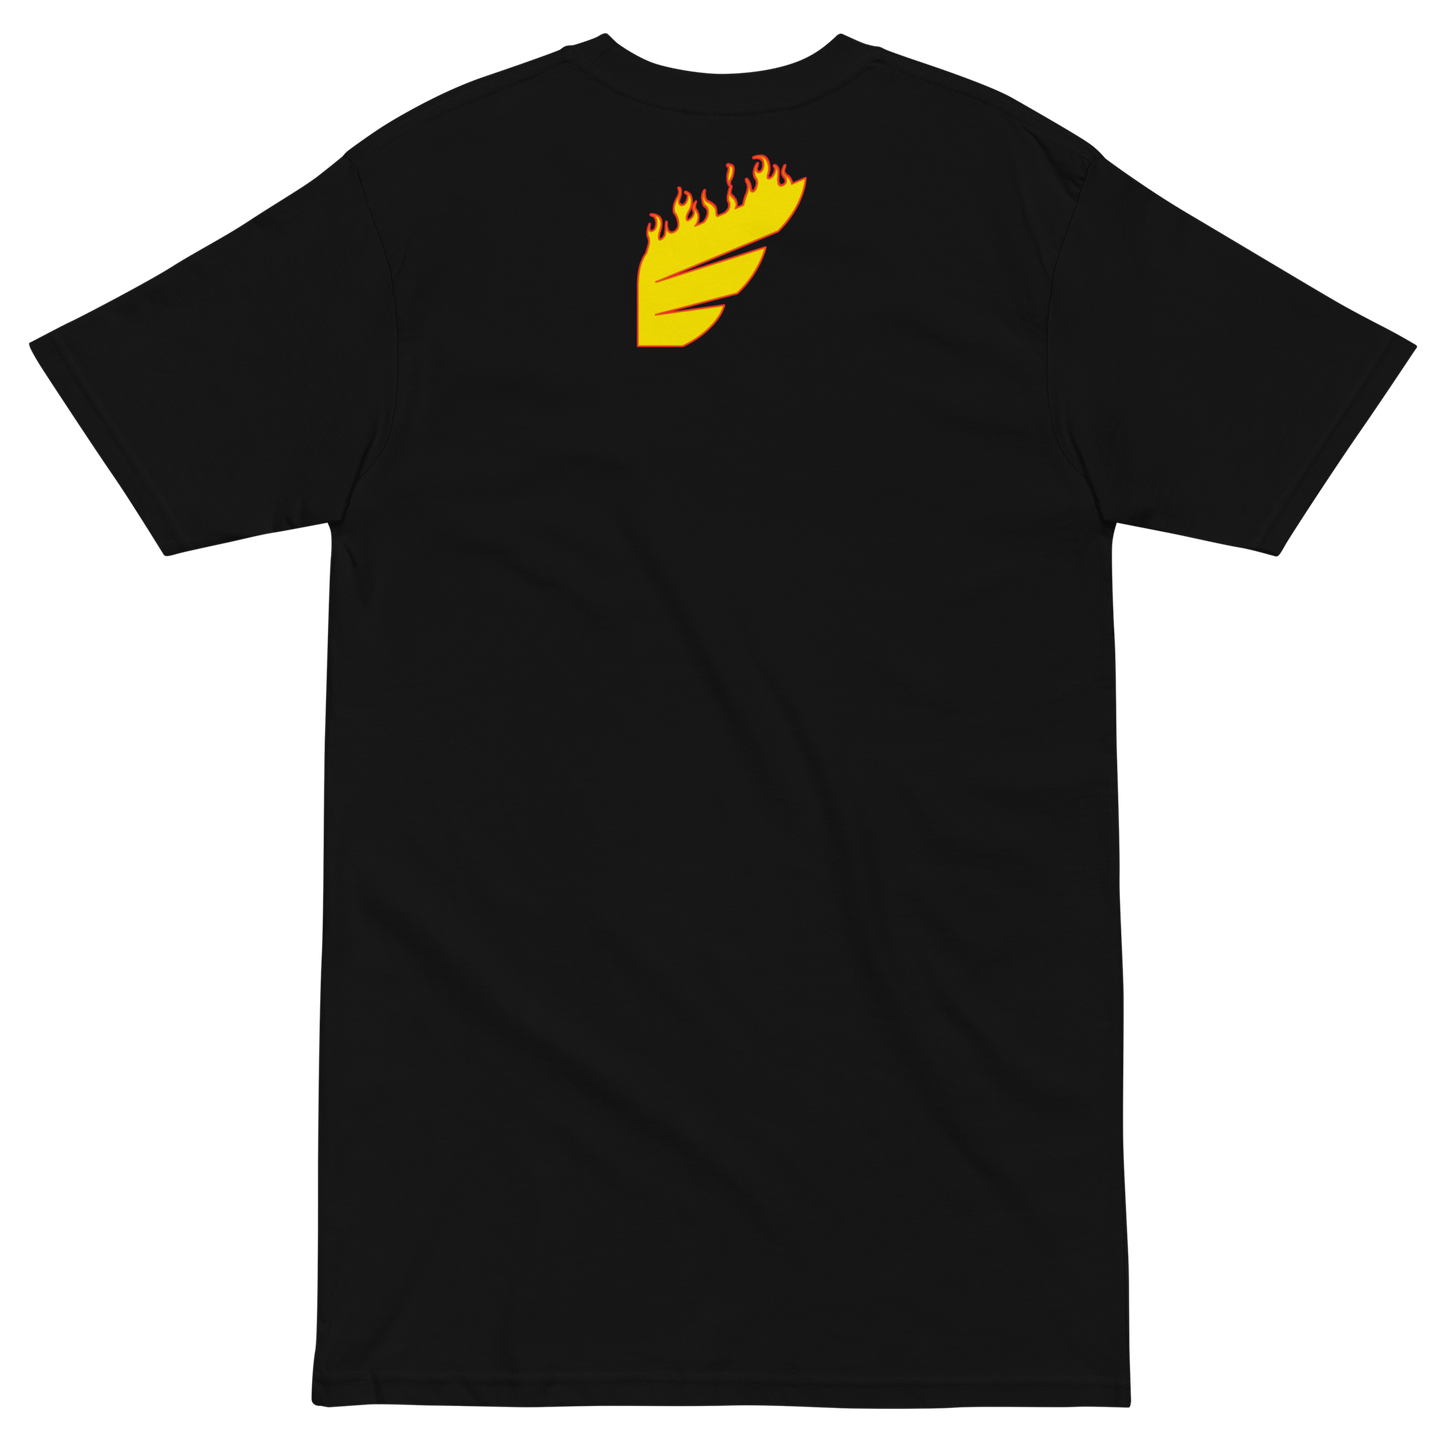 ELEVATE CLUB - Skate Edition - T-Shirt (Black)